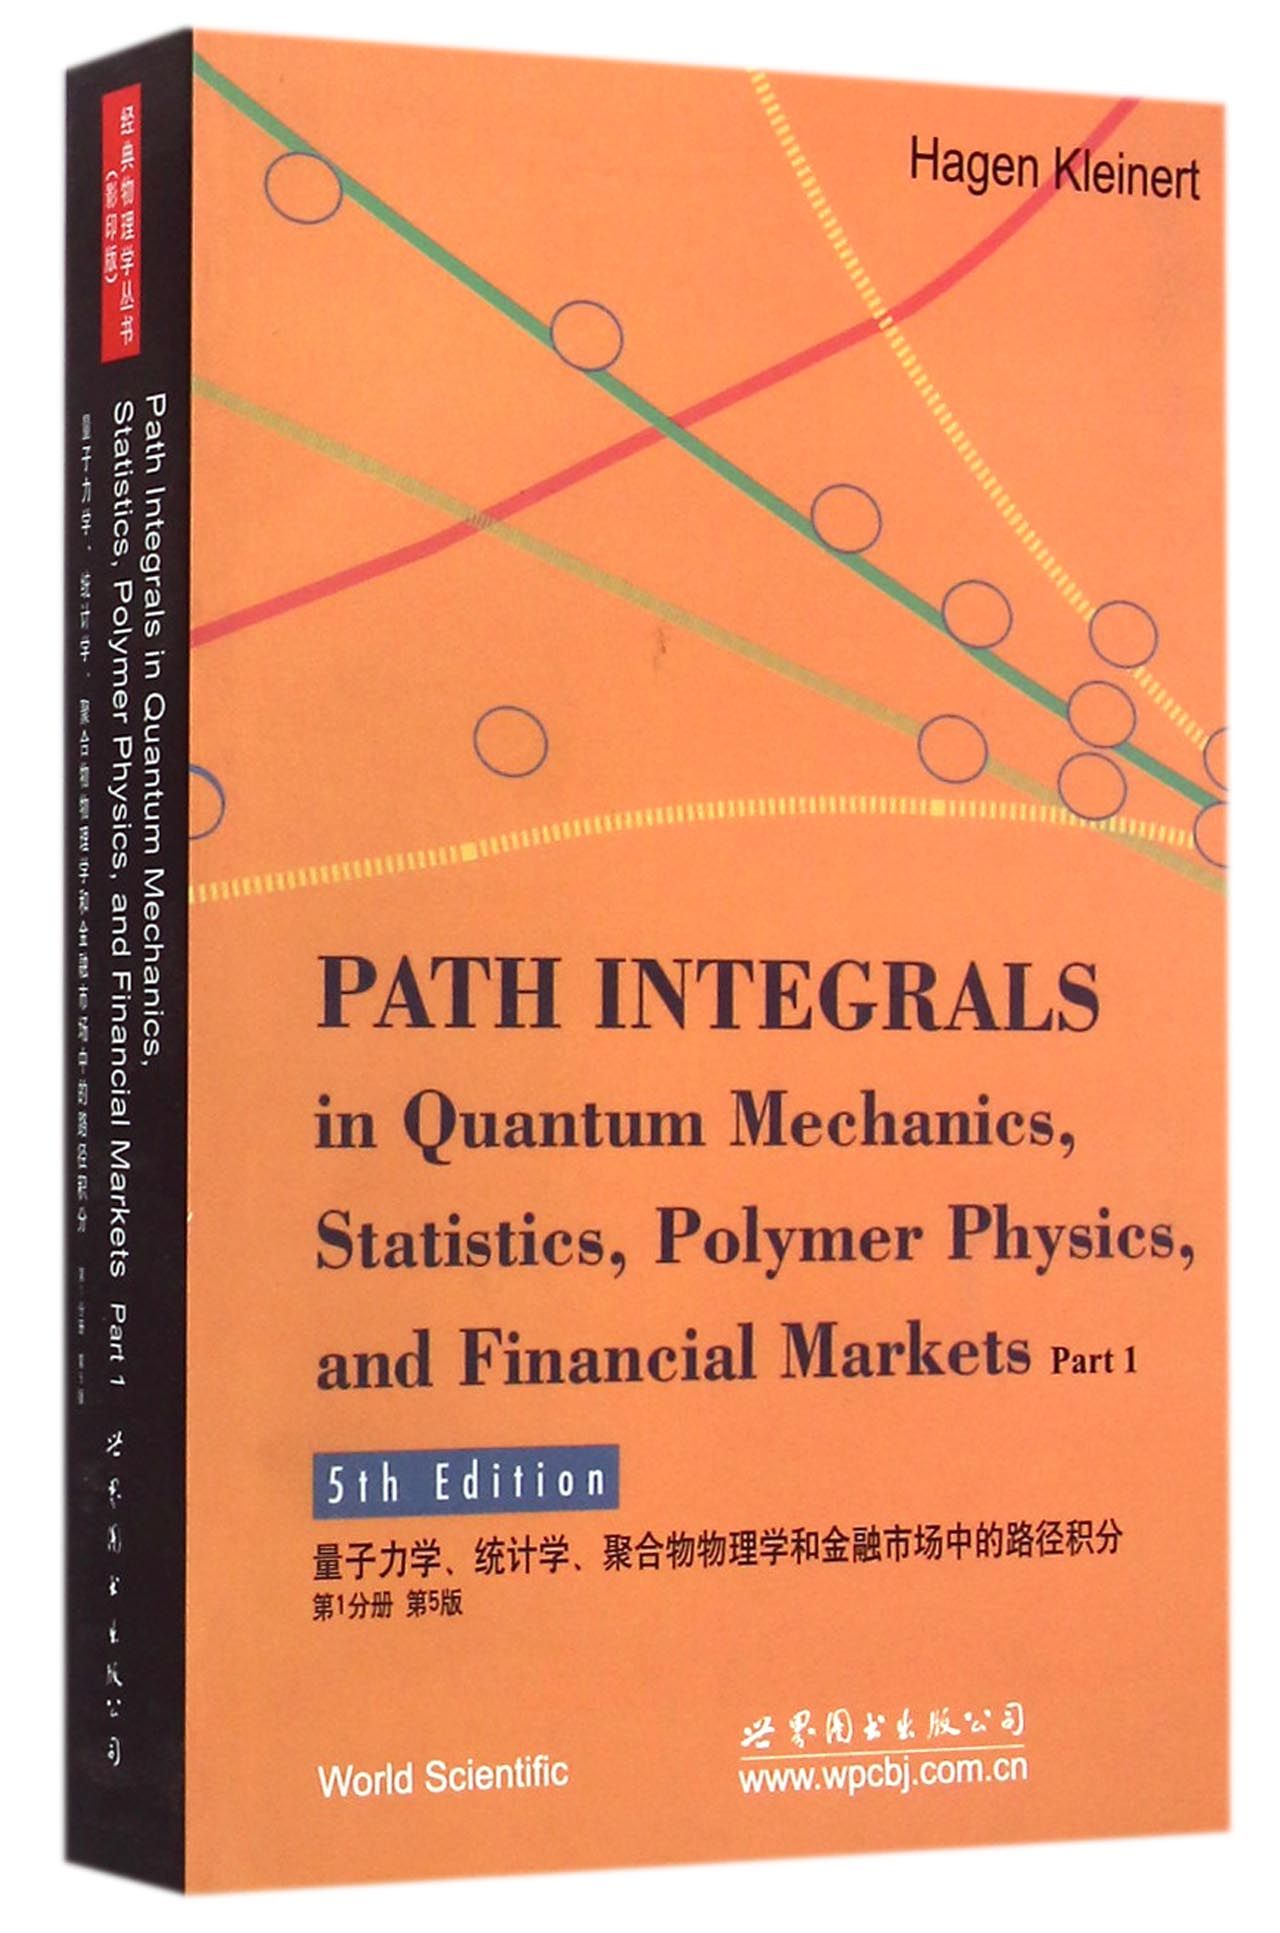 量子力学统计学聚合物物理学和金融市场中的路径积分(*分册第5版)(英文版)